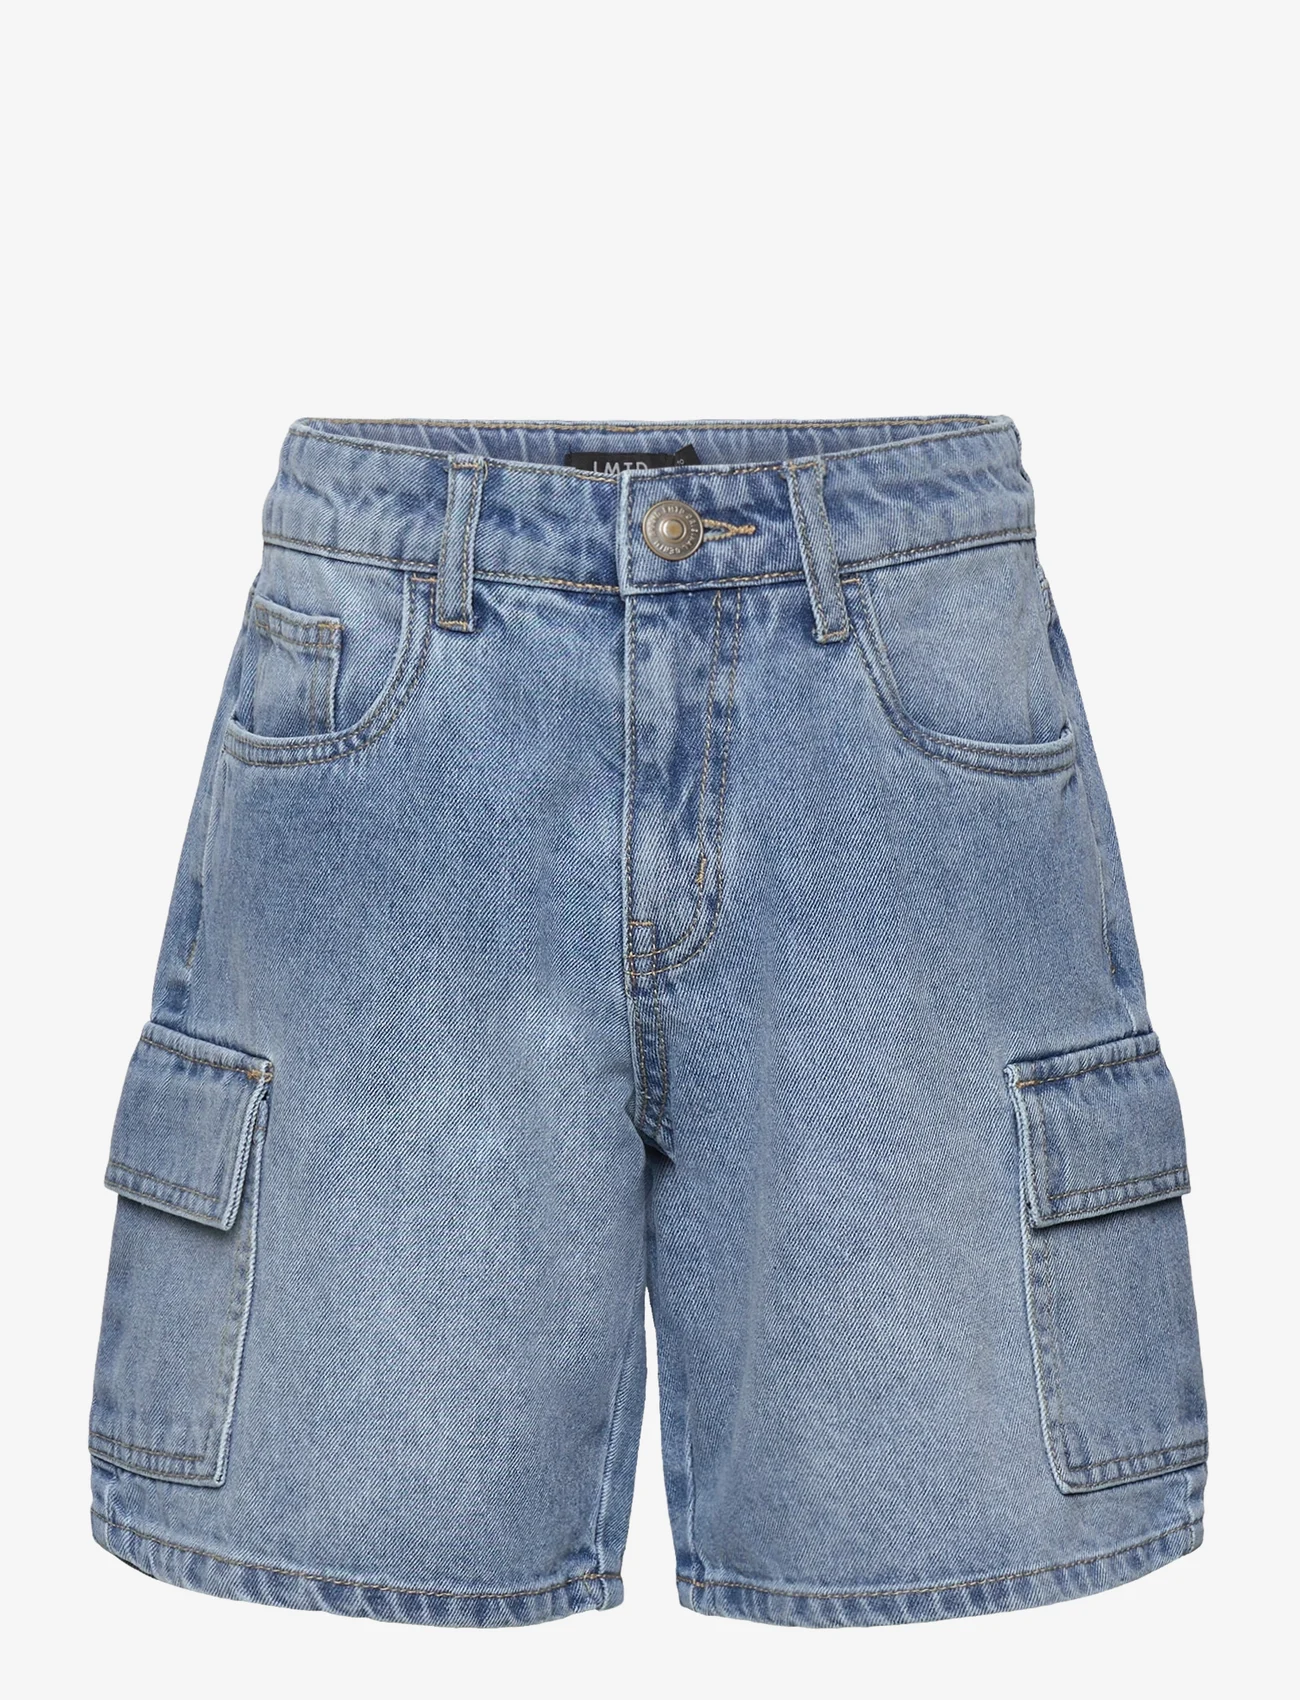 LMTD - NLMCARGIZZA DNM DAD SHORTS - denim shorts - light blue denim - 0